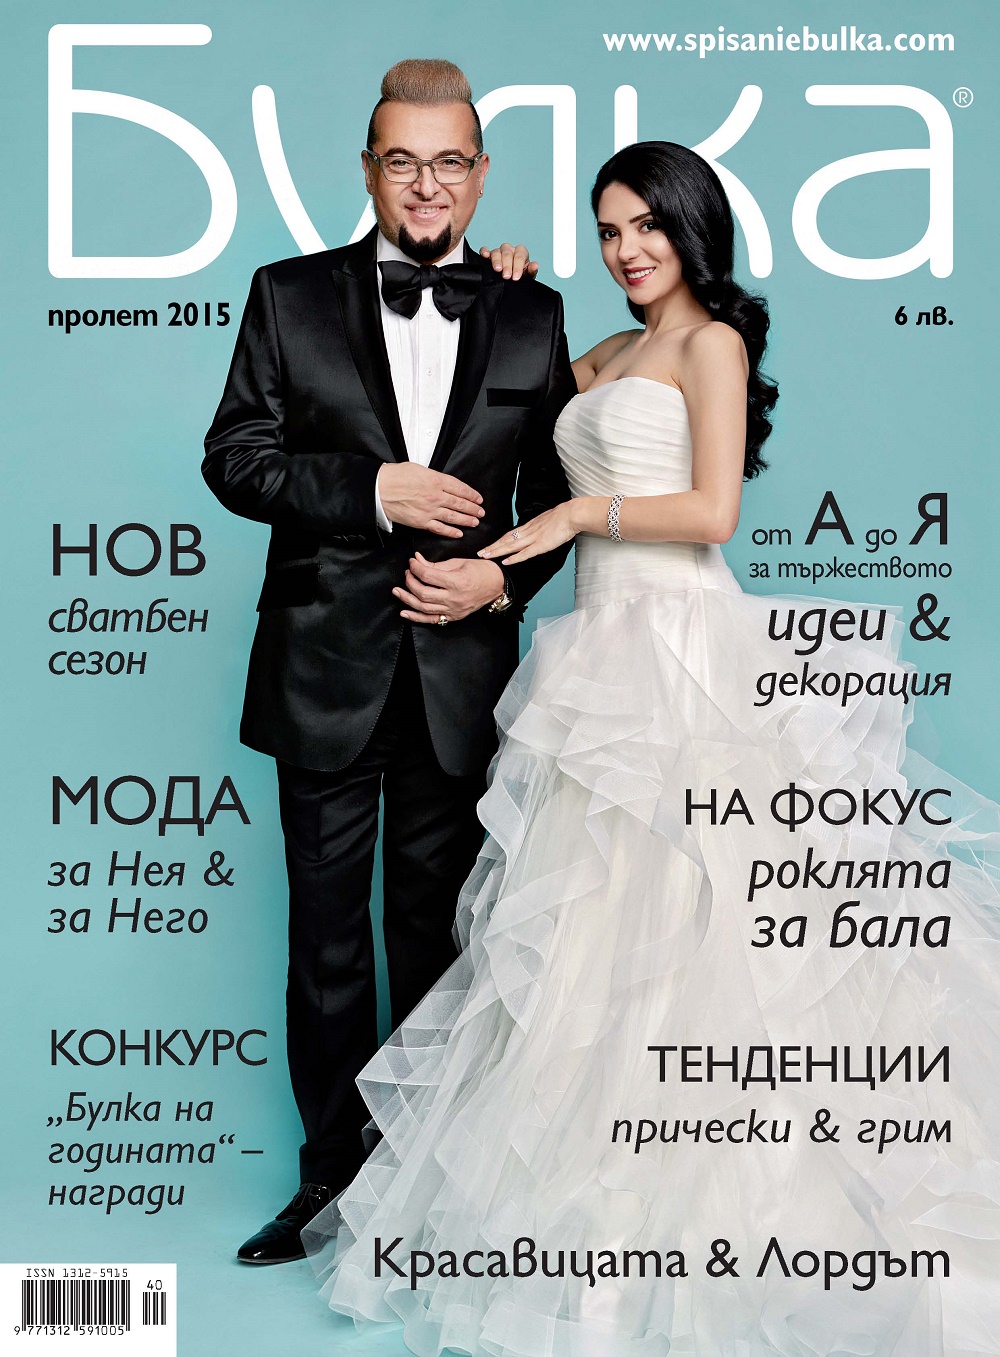 Ели Гигова и Евгени Минчев на корицата на списание ”Булка'